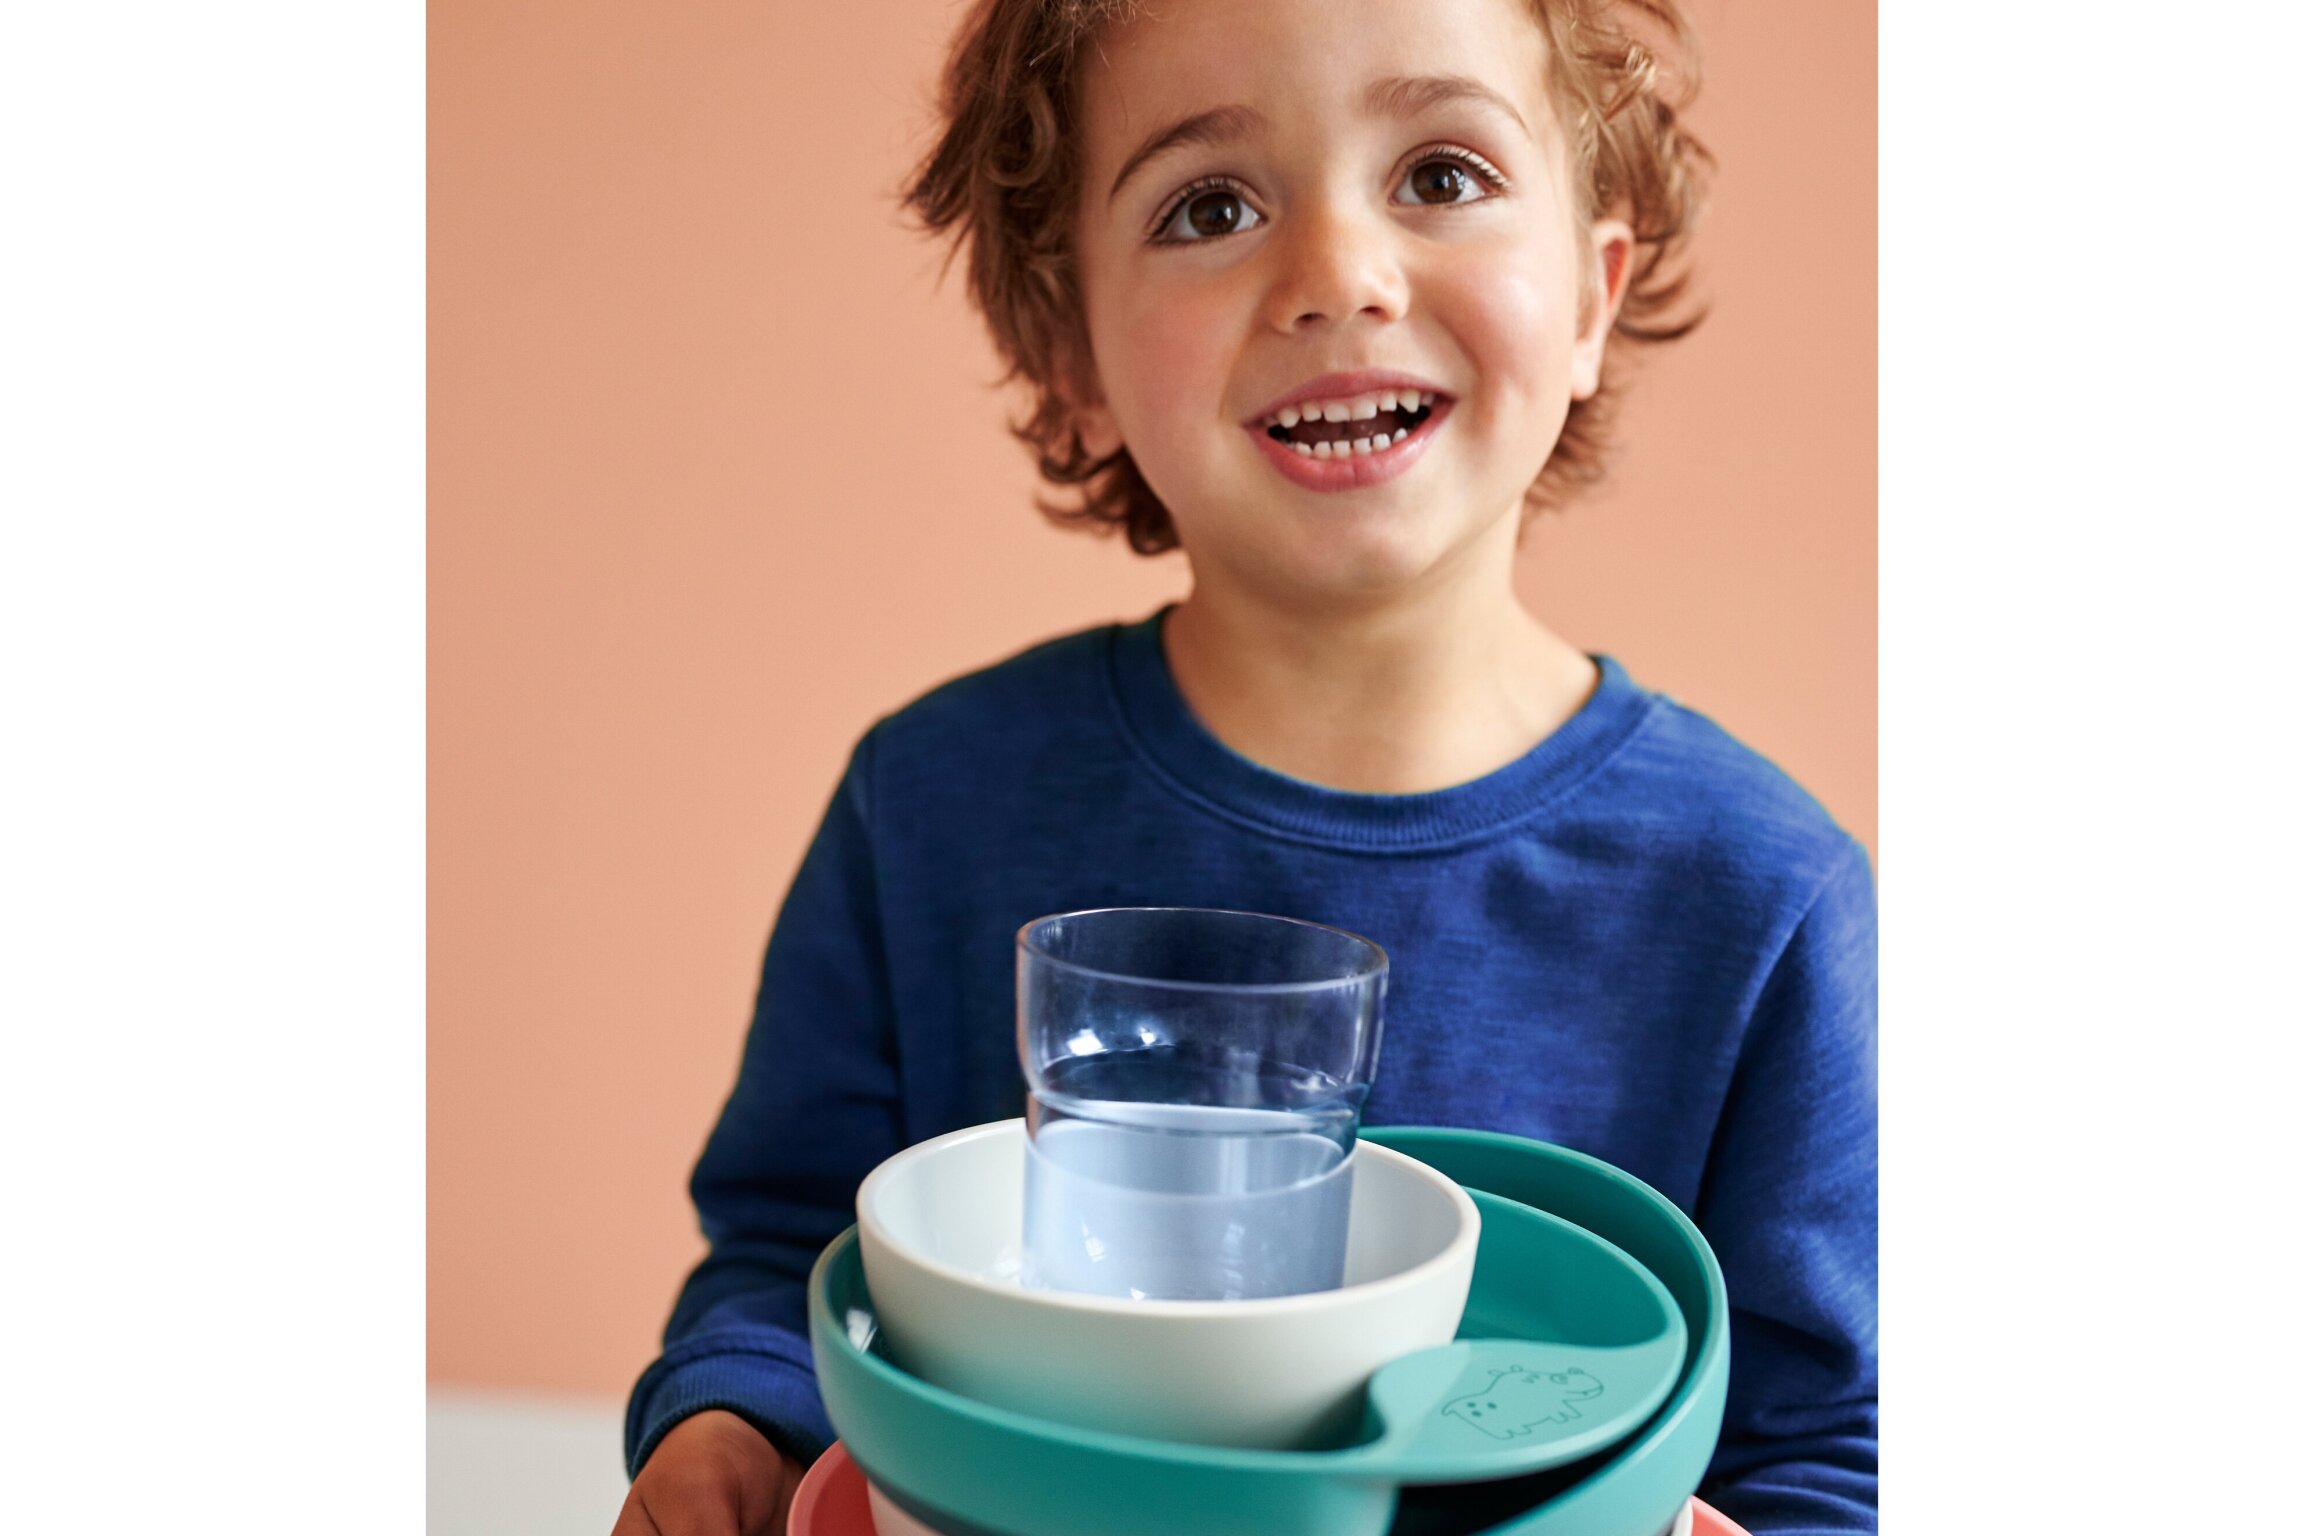 children's bowl mio - deep blue